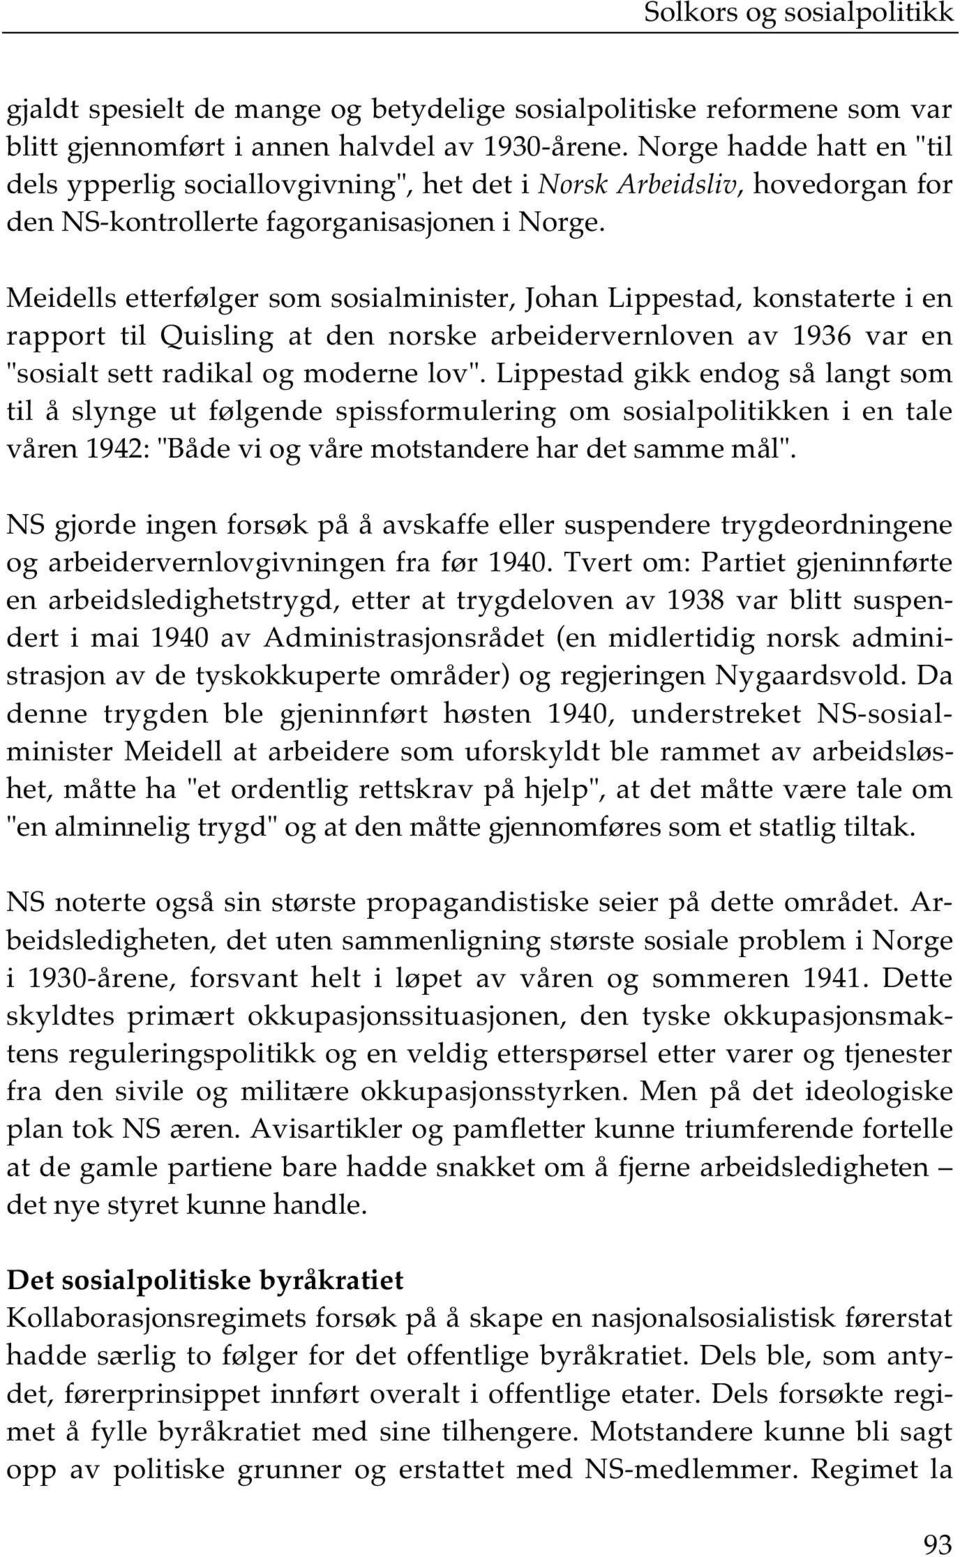 Meidells etterfølger som sosialminister, Johan Lippestad, konstaterte i en rapport til Quisling at den norske arbeidervernloven av 1936 var en "sosialt sett radikal og moderne lov".